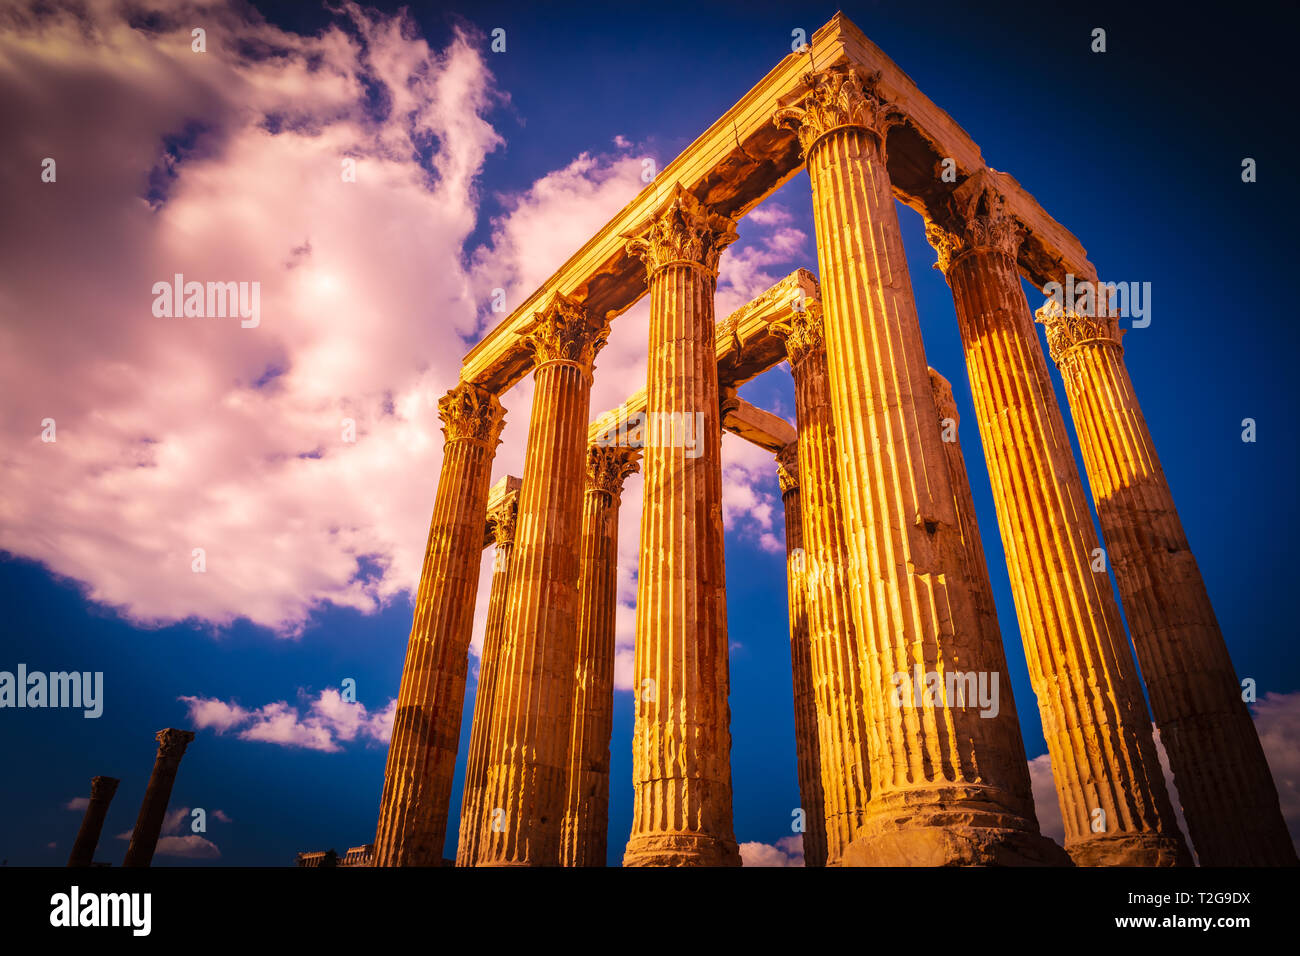 Le Temple De Zeus Olympien Ou Lolympieion Ou Colonnes De La Zeus Olympien Est Un Monument De La 